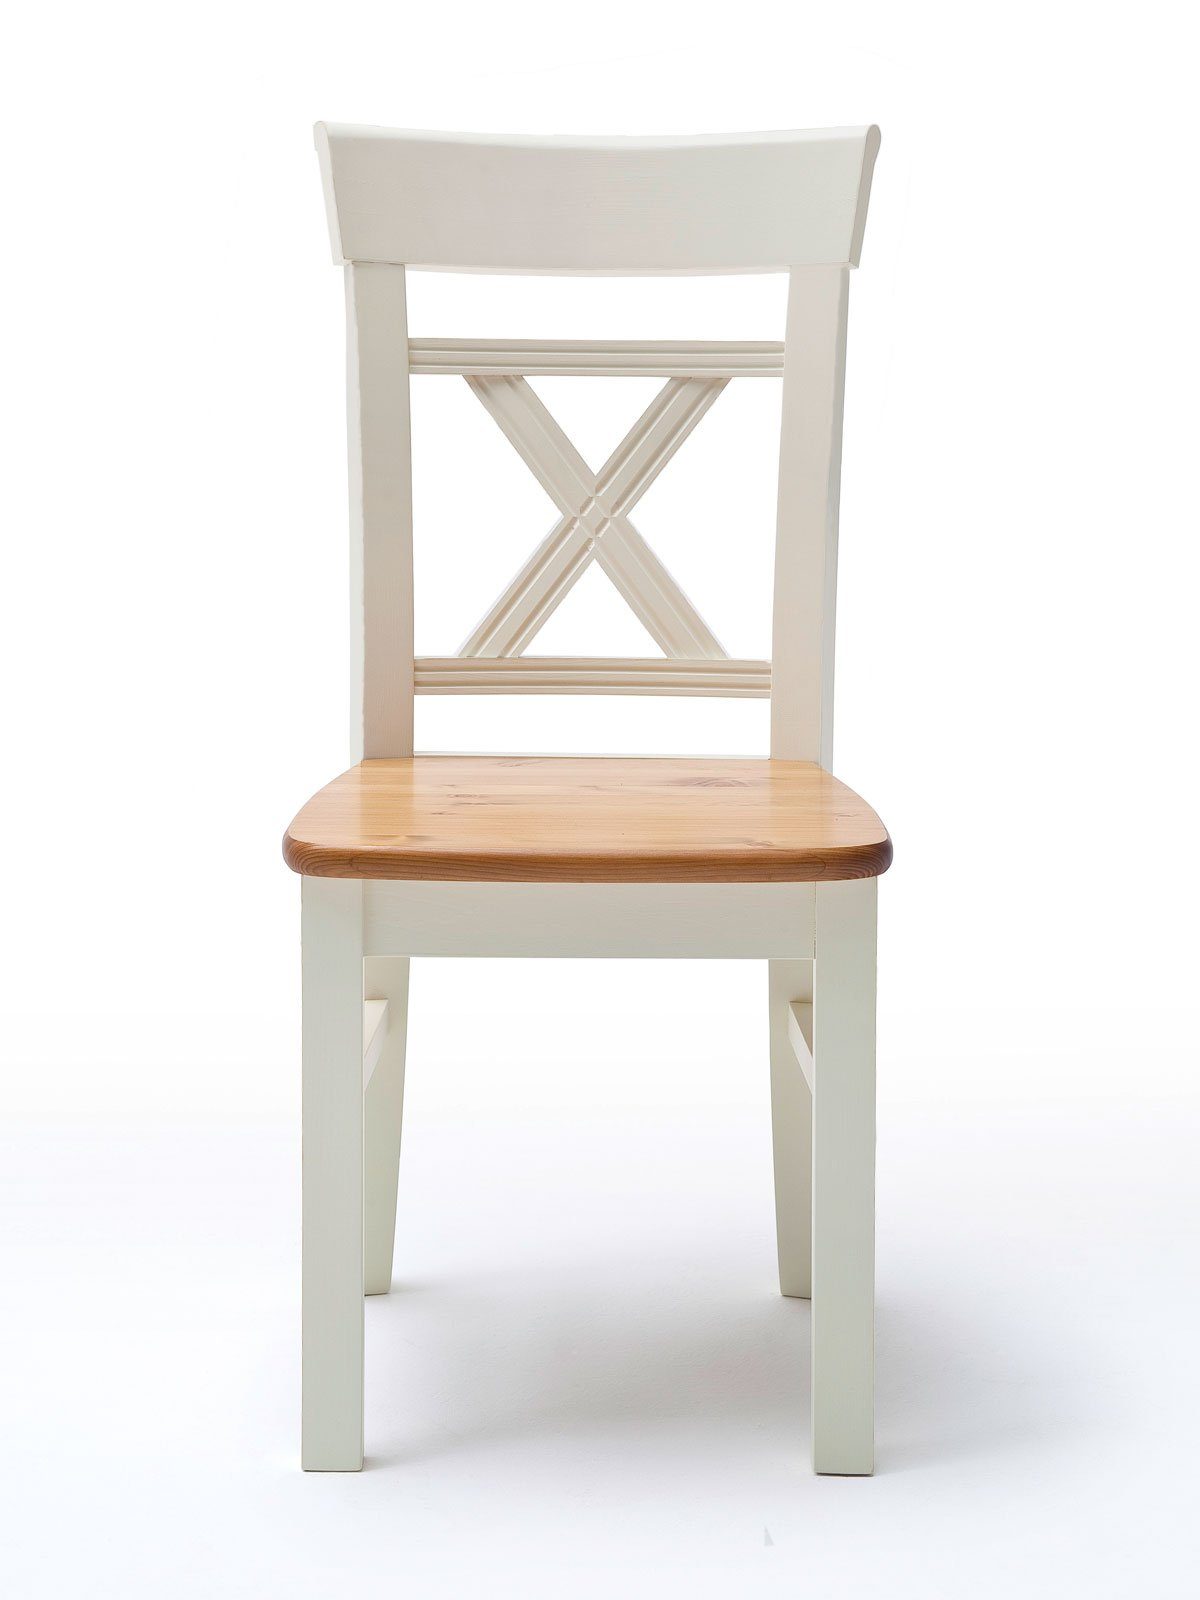 Massivholz Sitzfläche Casamia mit/ohne panna Absetzung mit Sitzkissen Esszimmerstuhl Esszimmer Padua sierra Stuhl